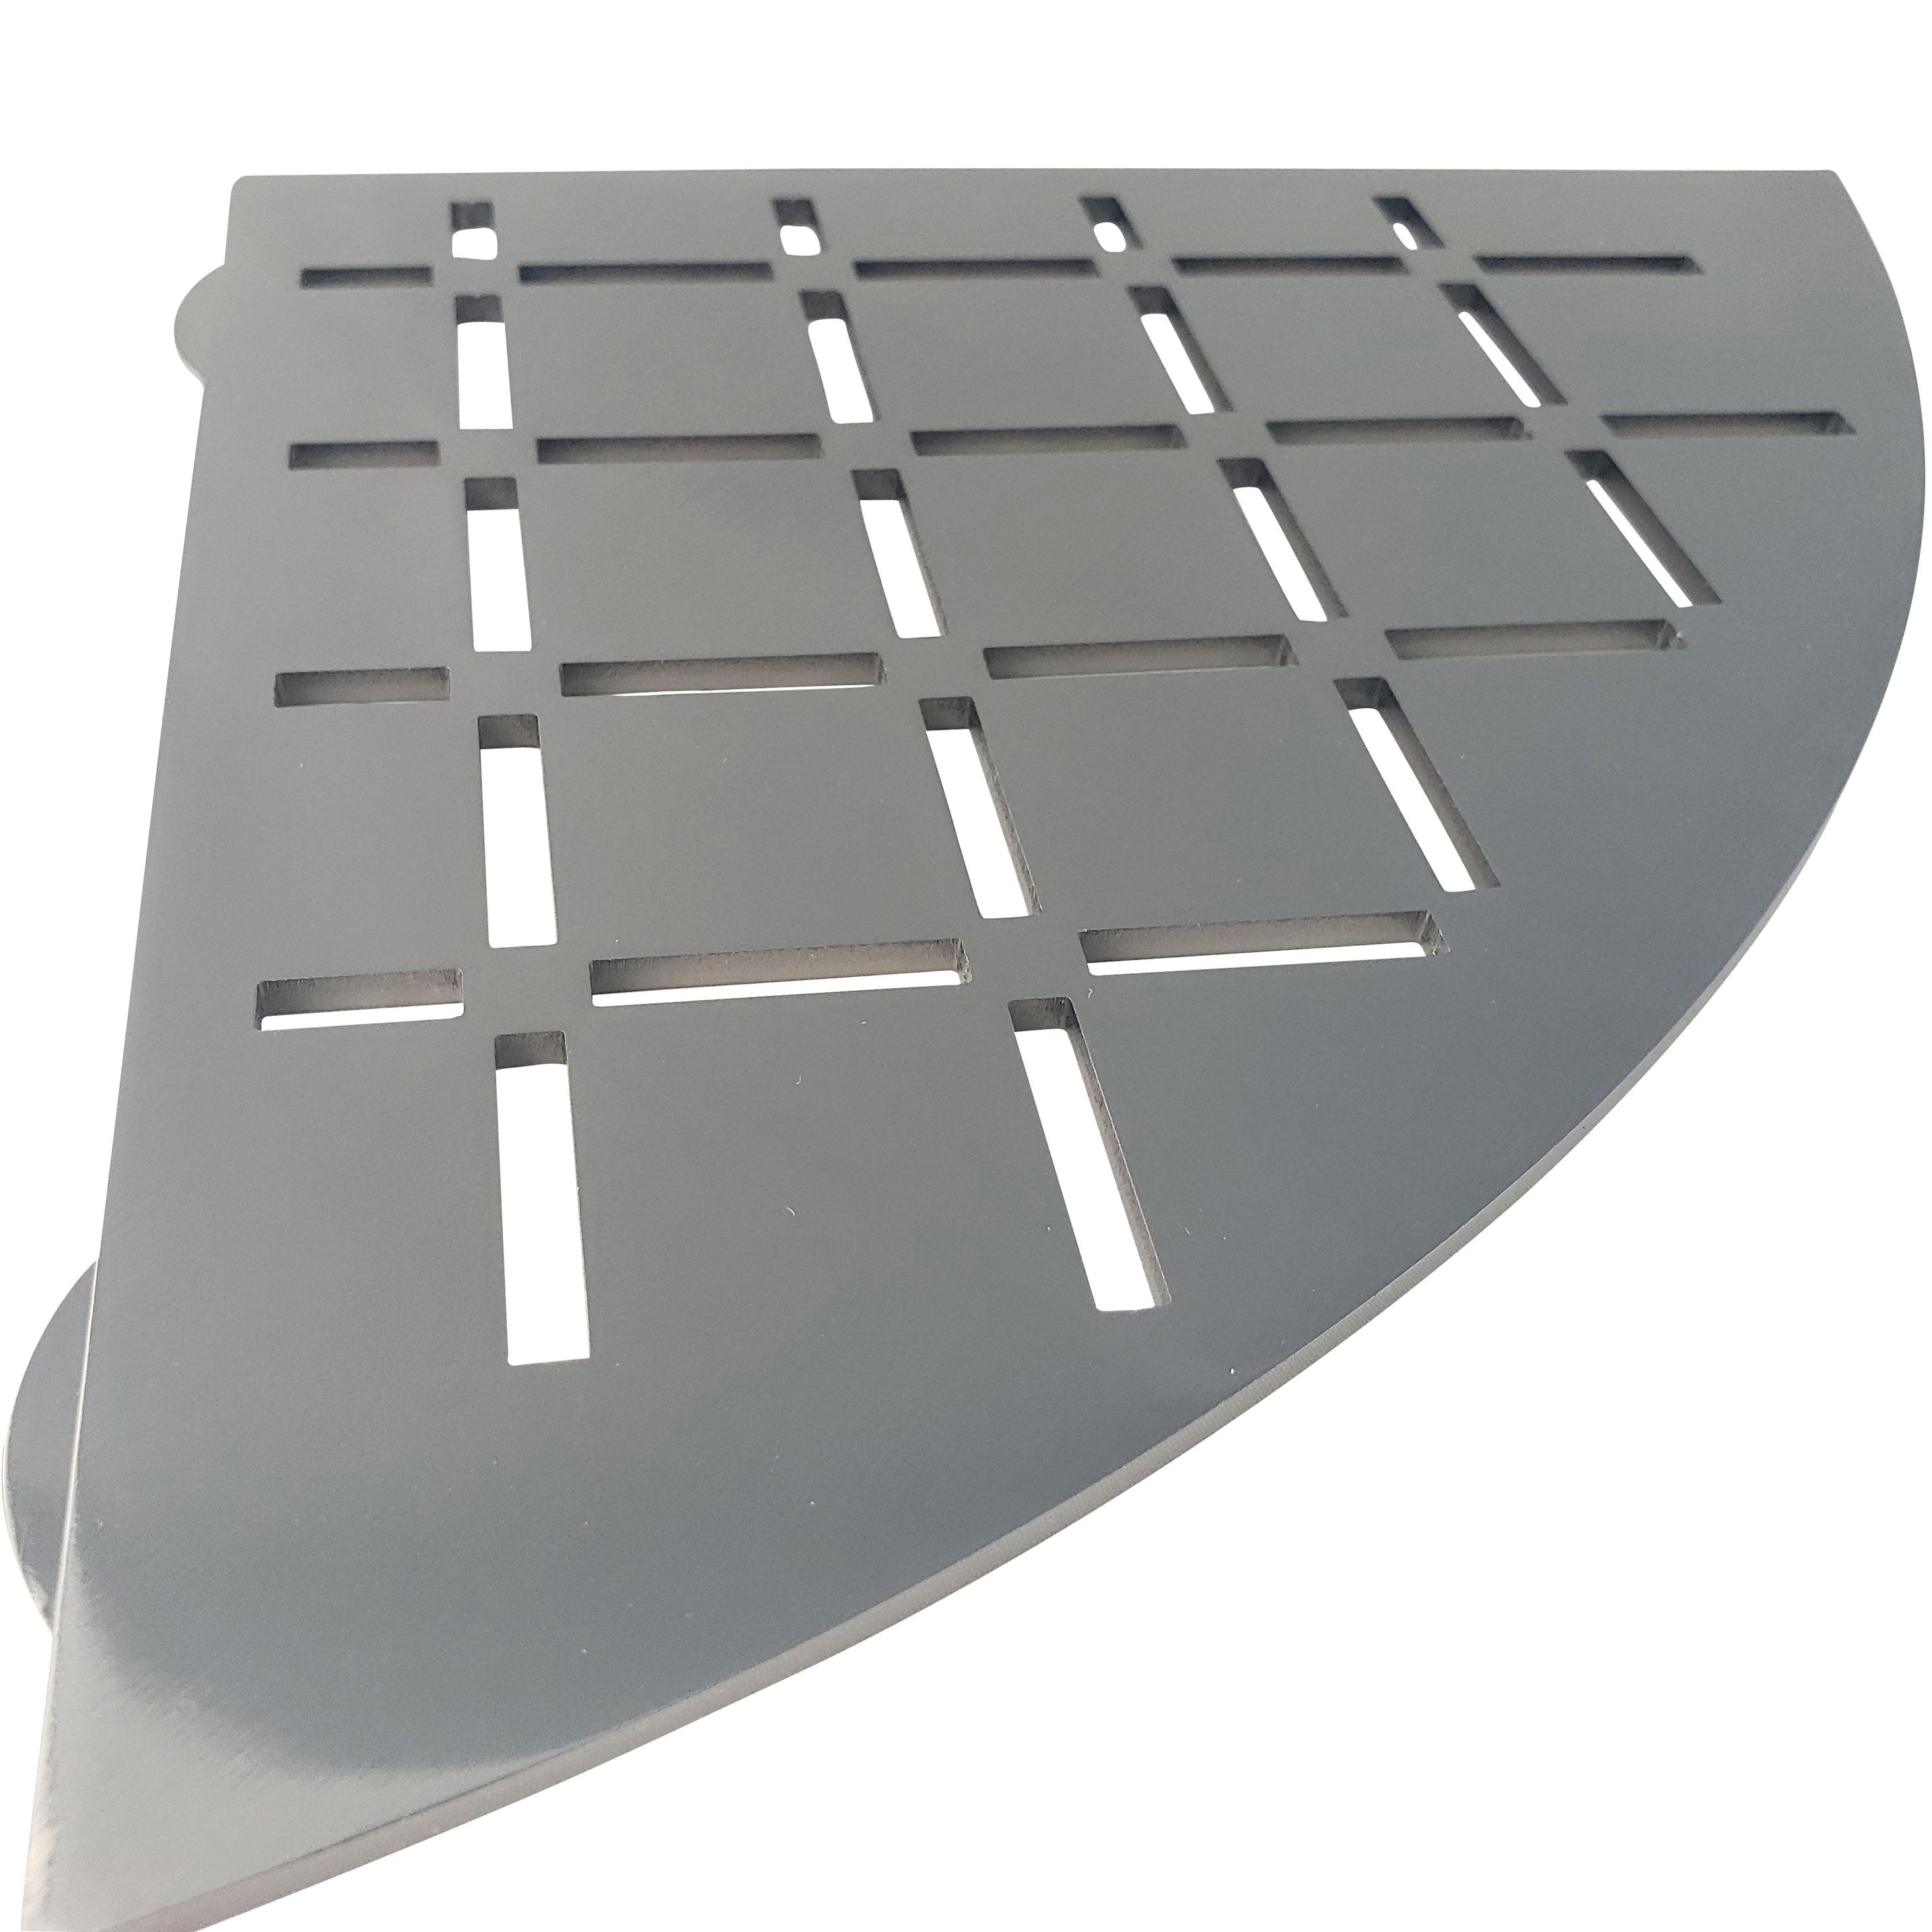 Stainless Steel Shower Shelf, Corner - Quadrant (Brushed Black Chrome)